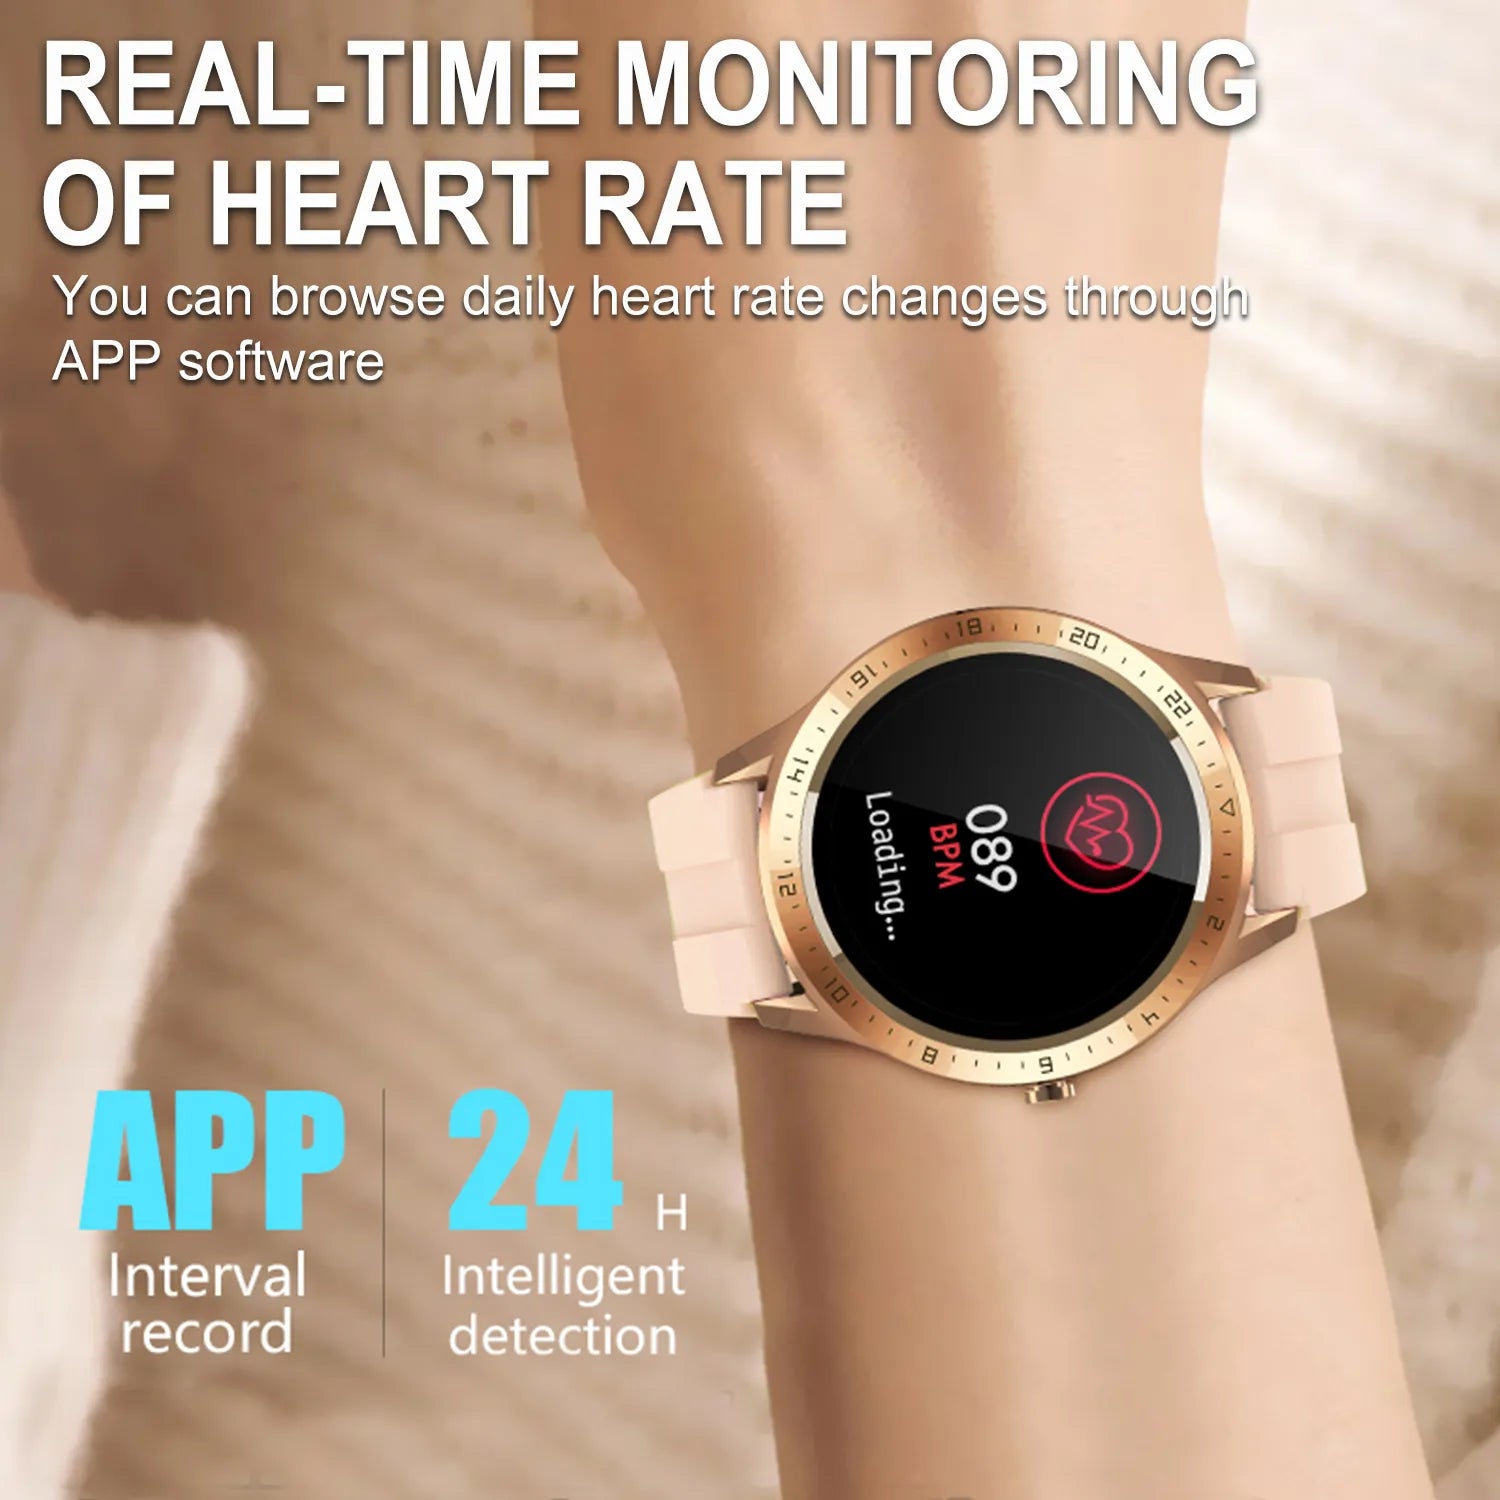 Men's Smart Watch | S28 Smart Watch | ElectoWatch